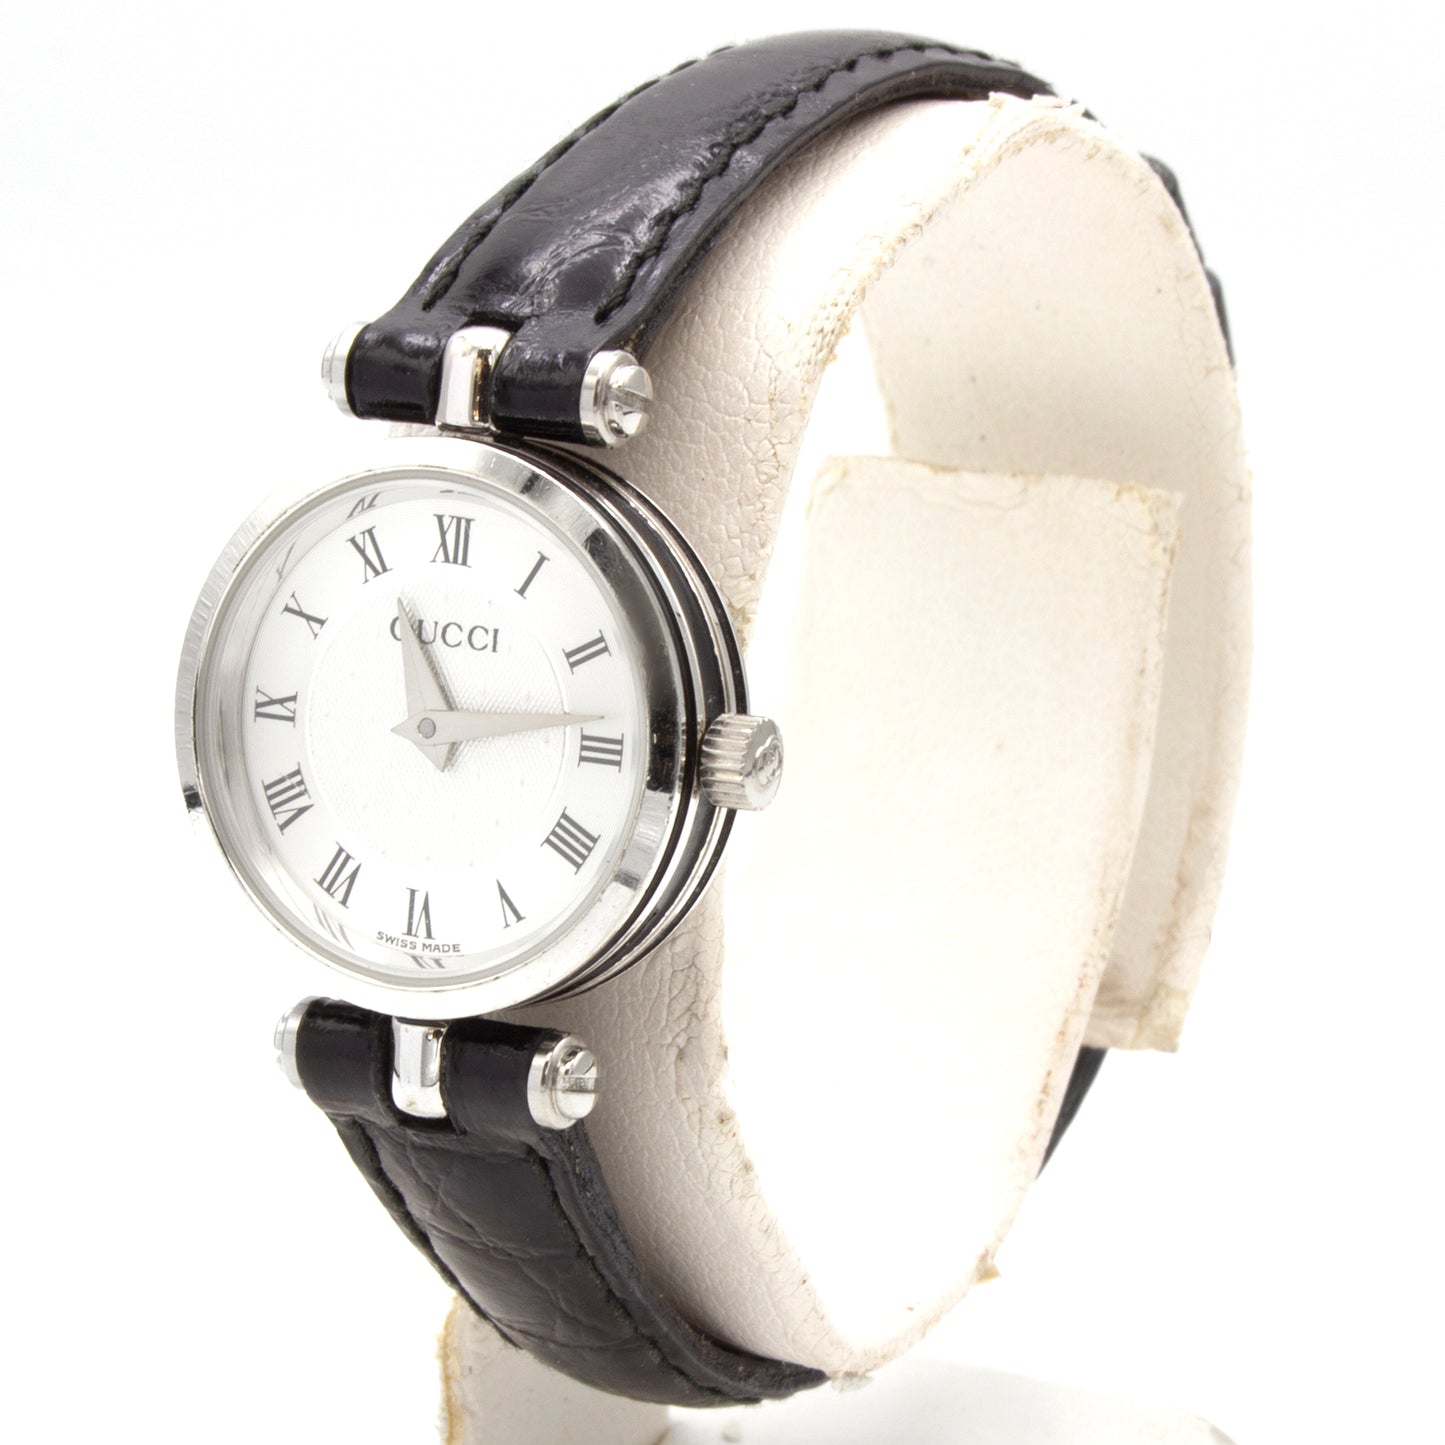 Gucci 2040L steel watch